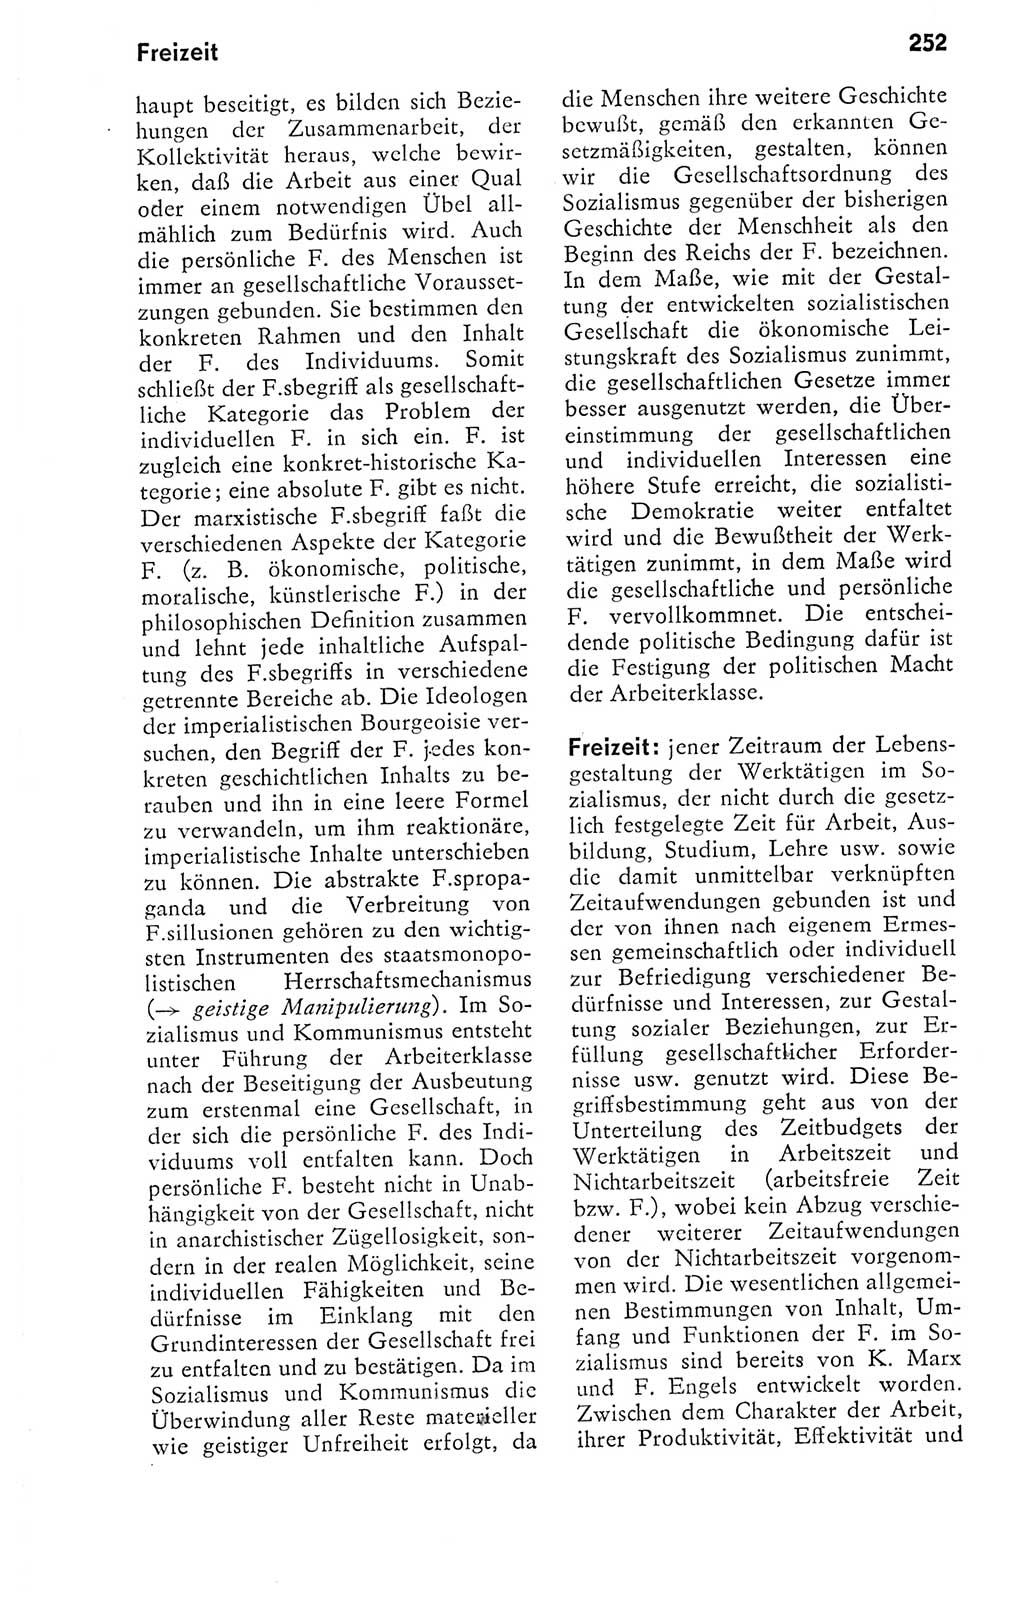 Kleines politisches Wörterbuch [Deutsche Demokratische Republik (DDR)] 1978, Seite 252 (Kl. pol. Wb. DDR 1978, S. 252)